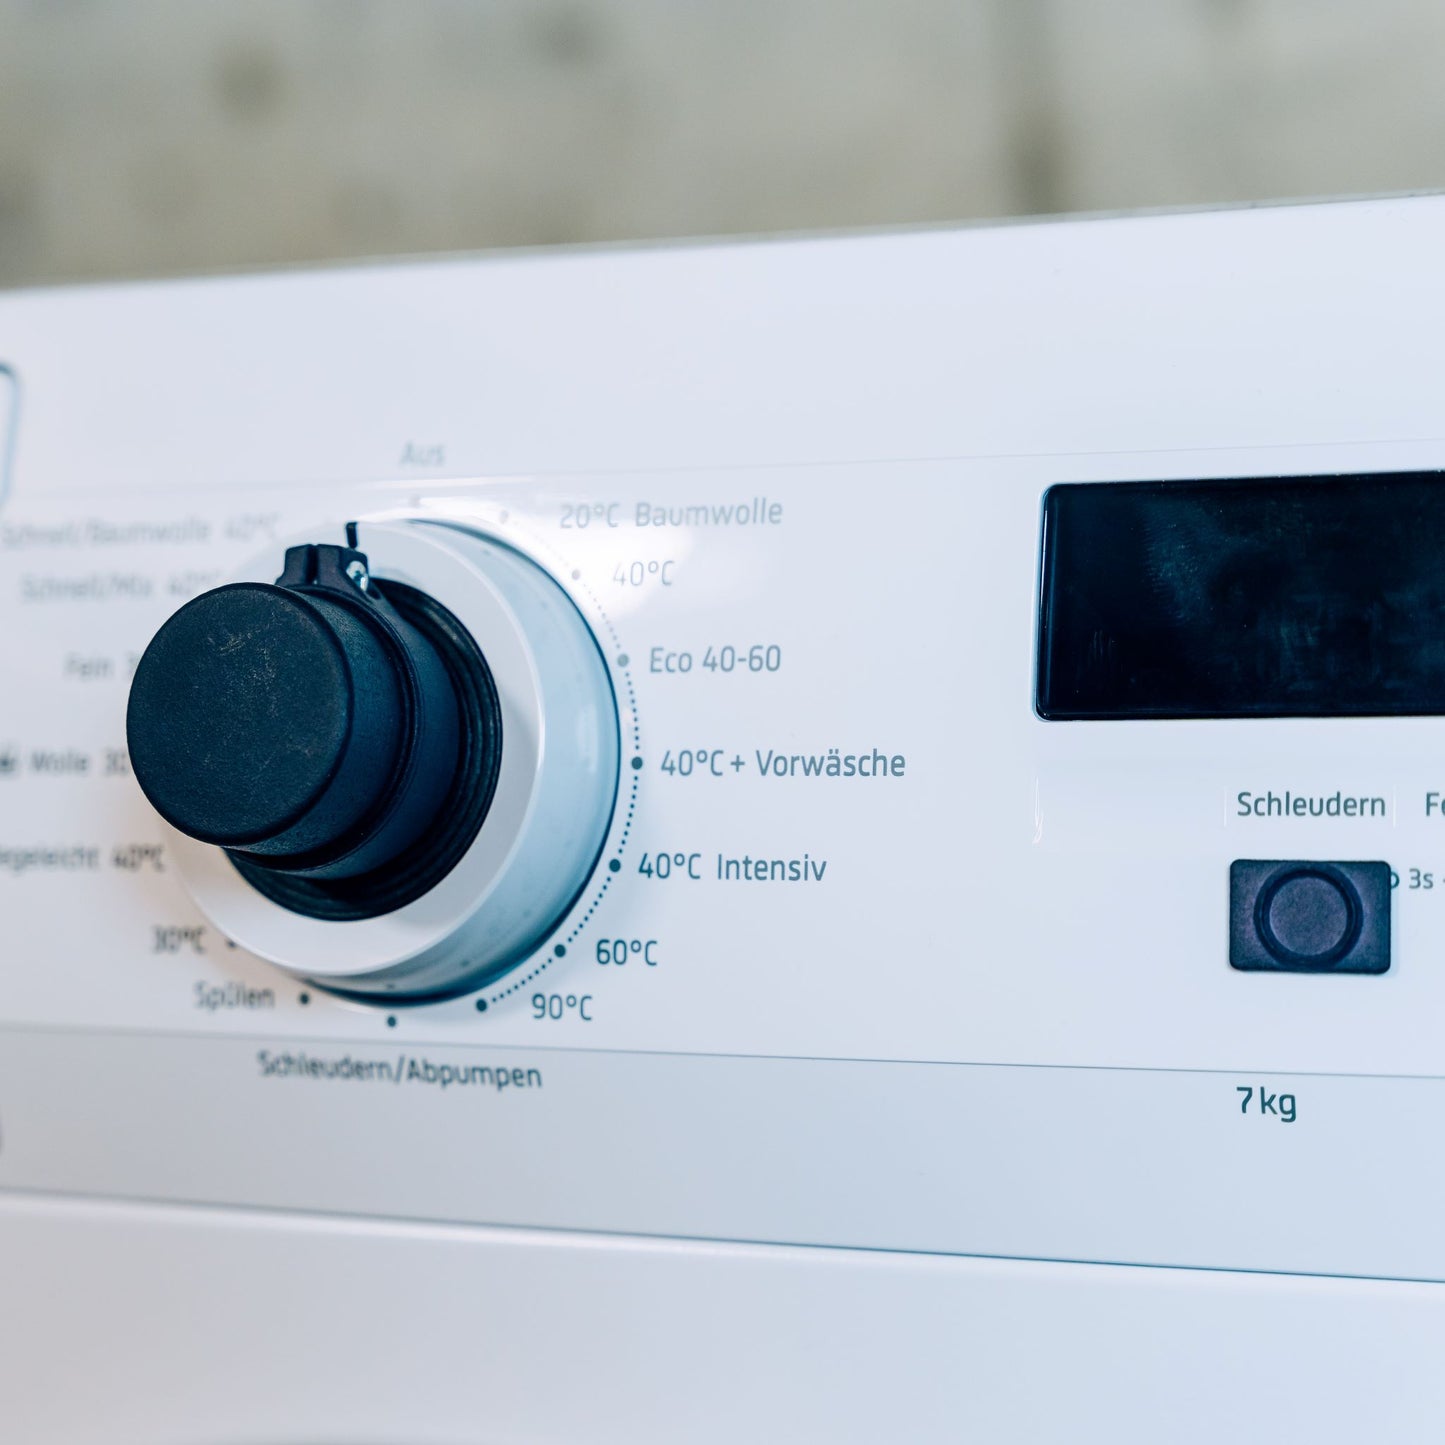 Der Feelware Audio Bedienknopf ist auf dem Original Programmwahlknopf der Waschmaschine angebracht. Die Taste für Schleudern ist mit einem taktilen Symbol markiert.